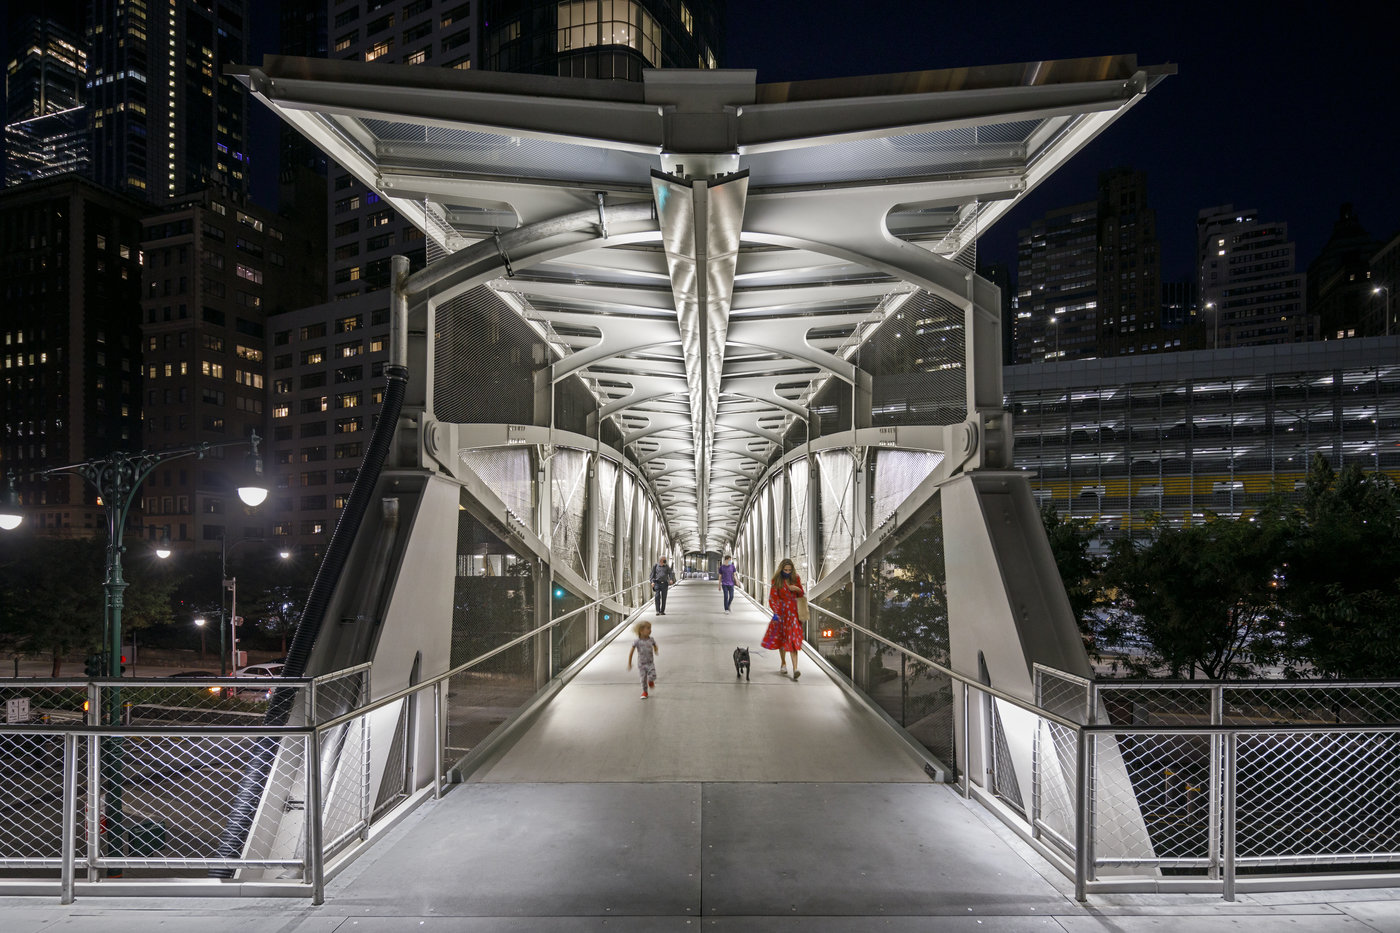 Robert R. Douglass Pedestrian Bridge by WXY, 2021-08-01